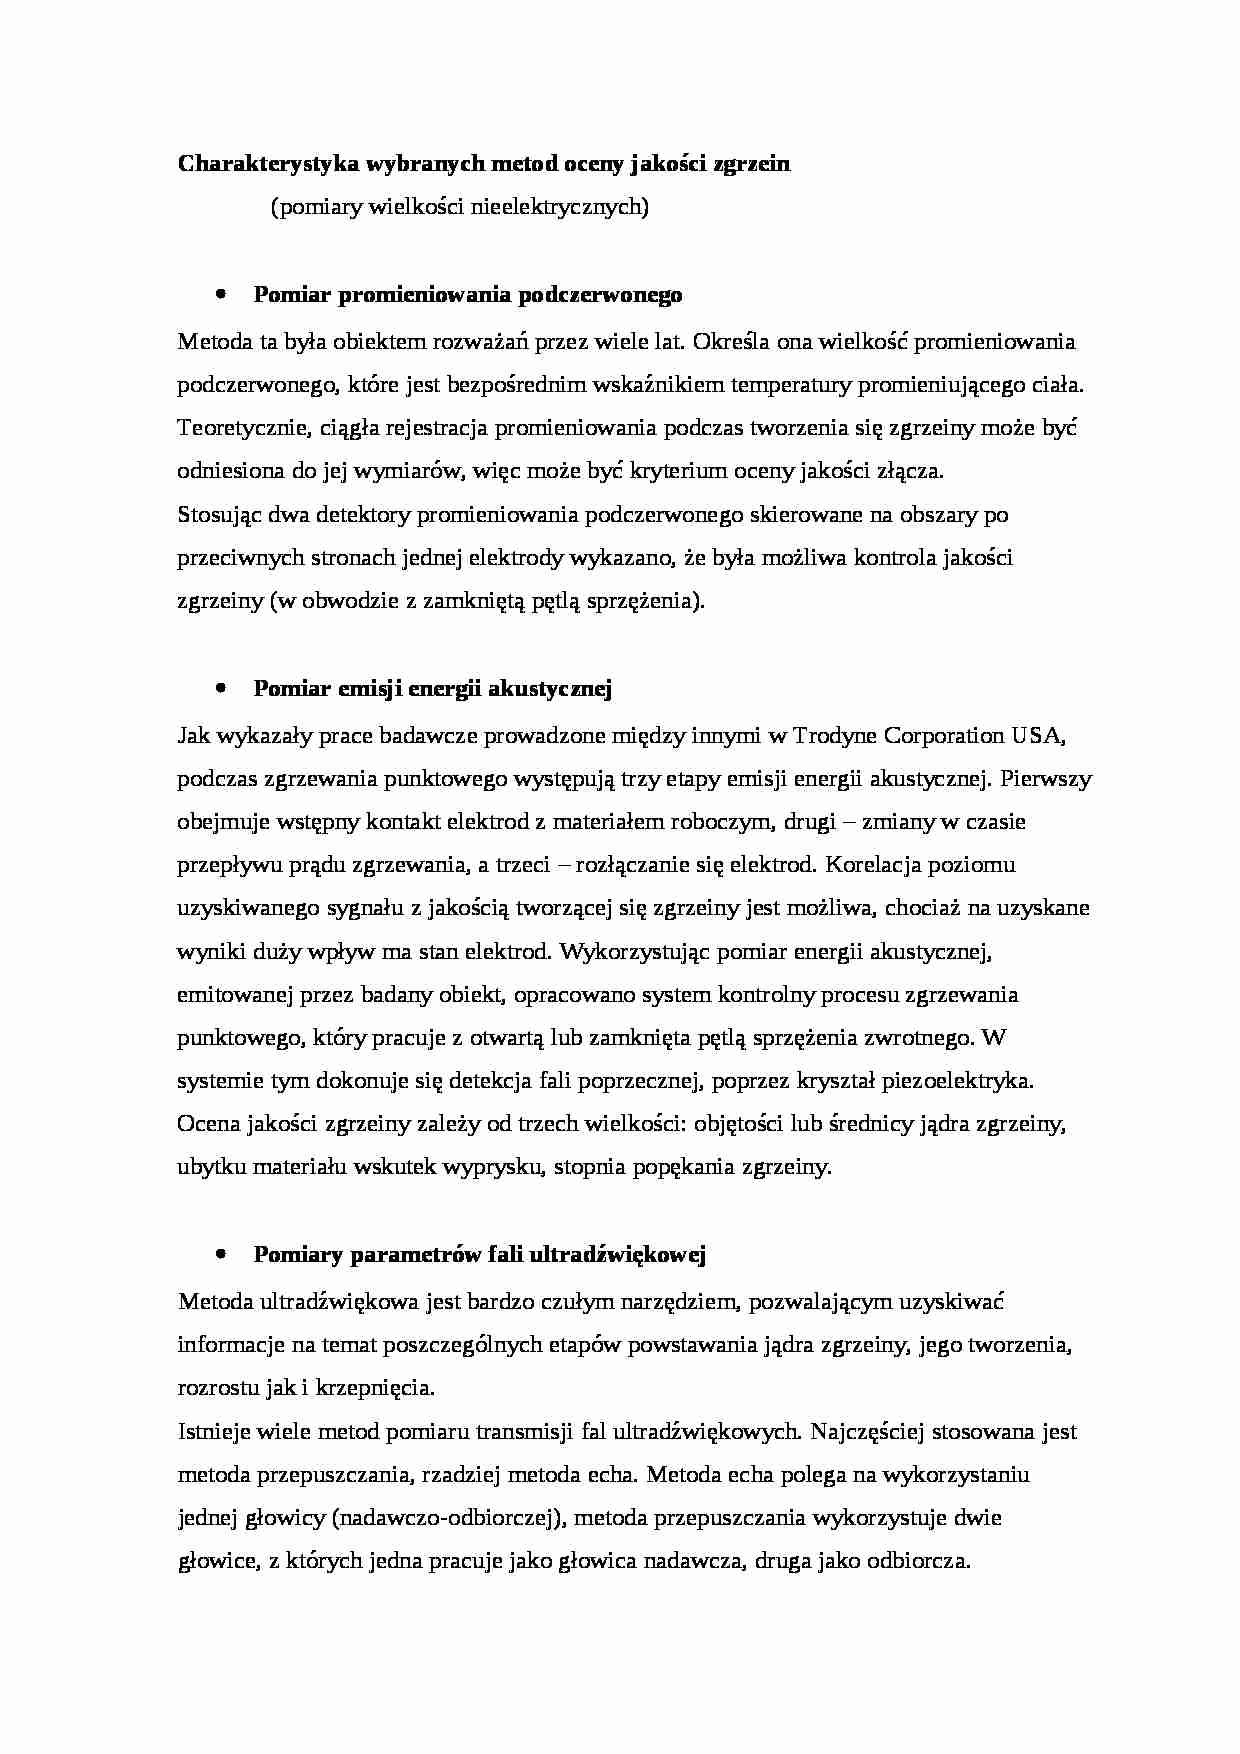 Charakterystyka wybranych metod oceny jakości zgrzein - wykład - strona 1